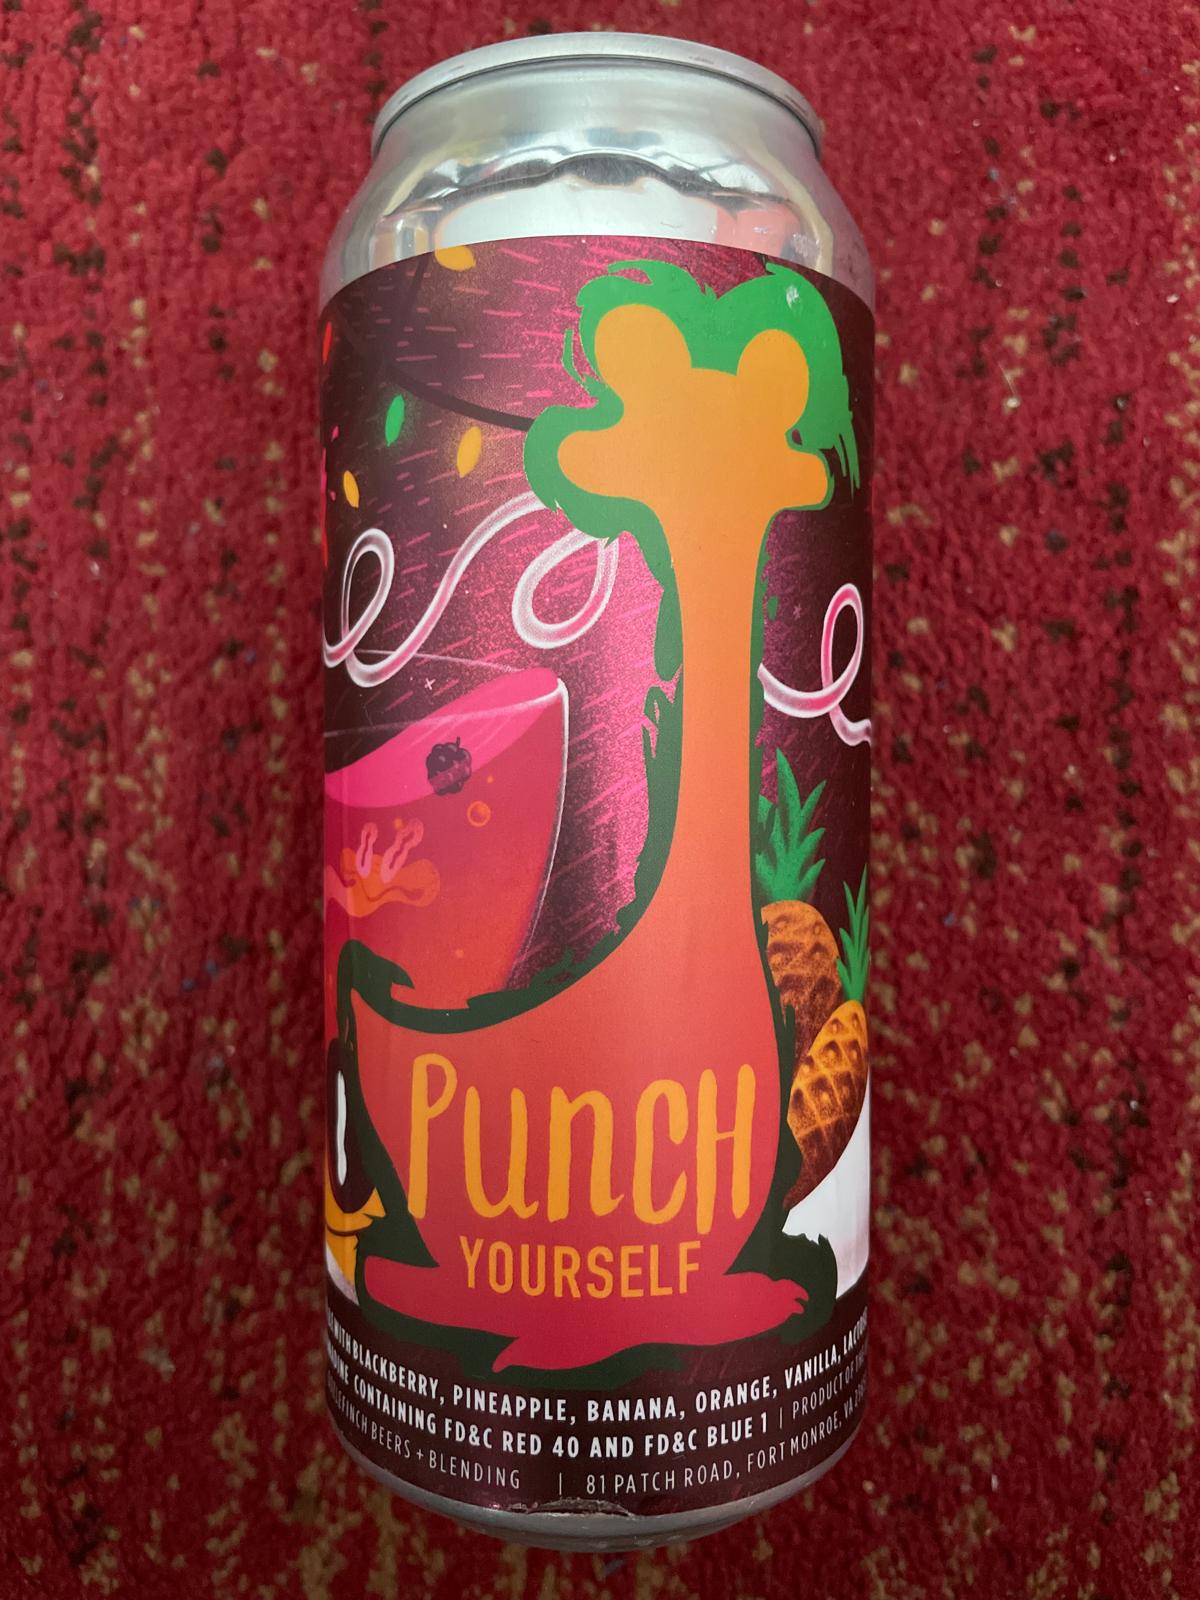 Punch Yourself: Rum Runner - Blackberry, Pineapple, Banana, Orange & Vanilla